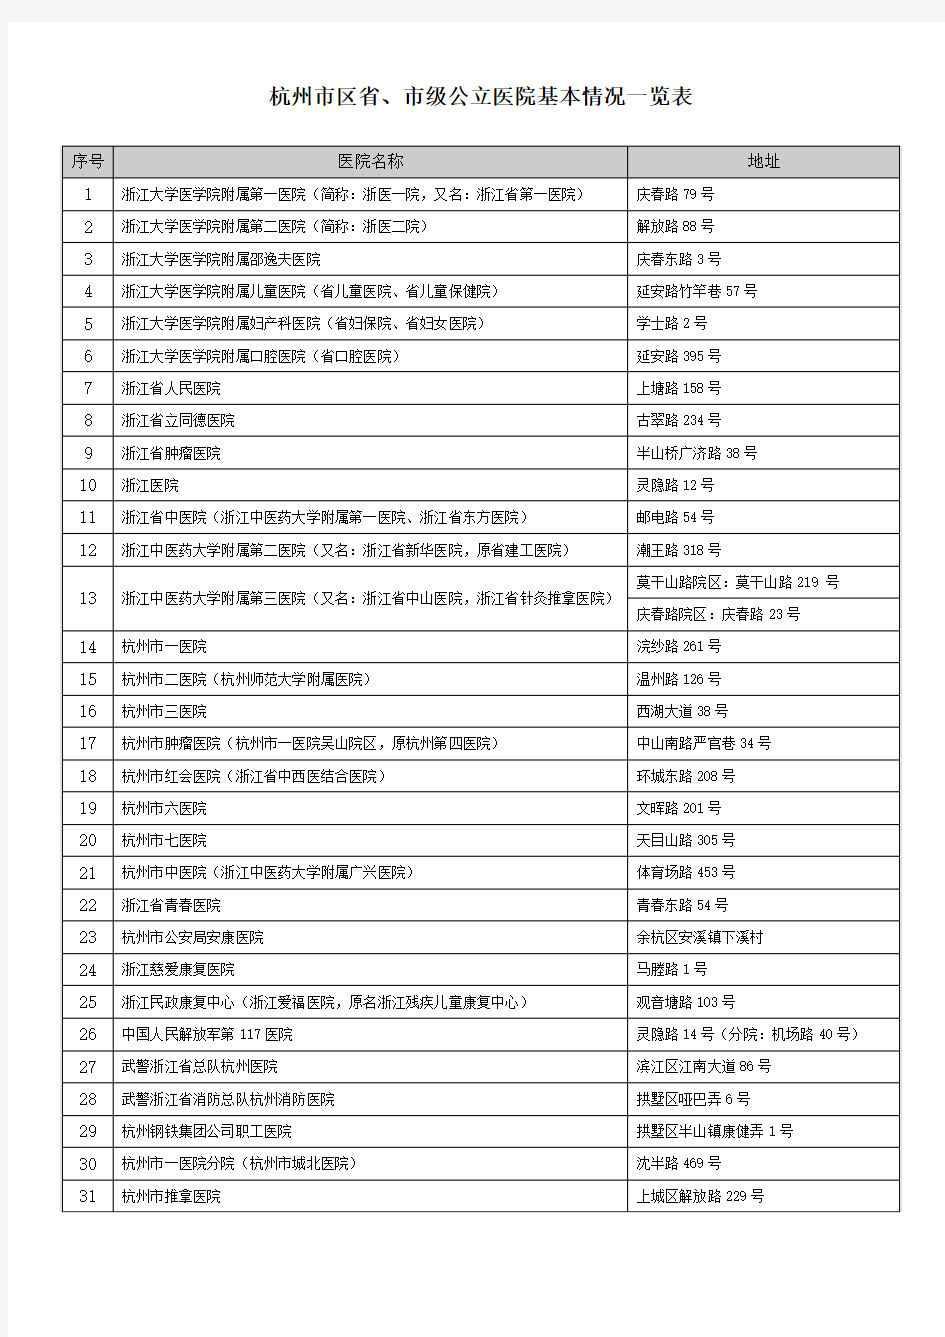 杭州市区省、市级公立医院基本情况一览表